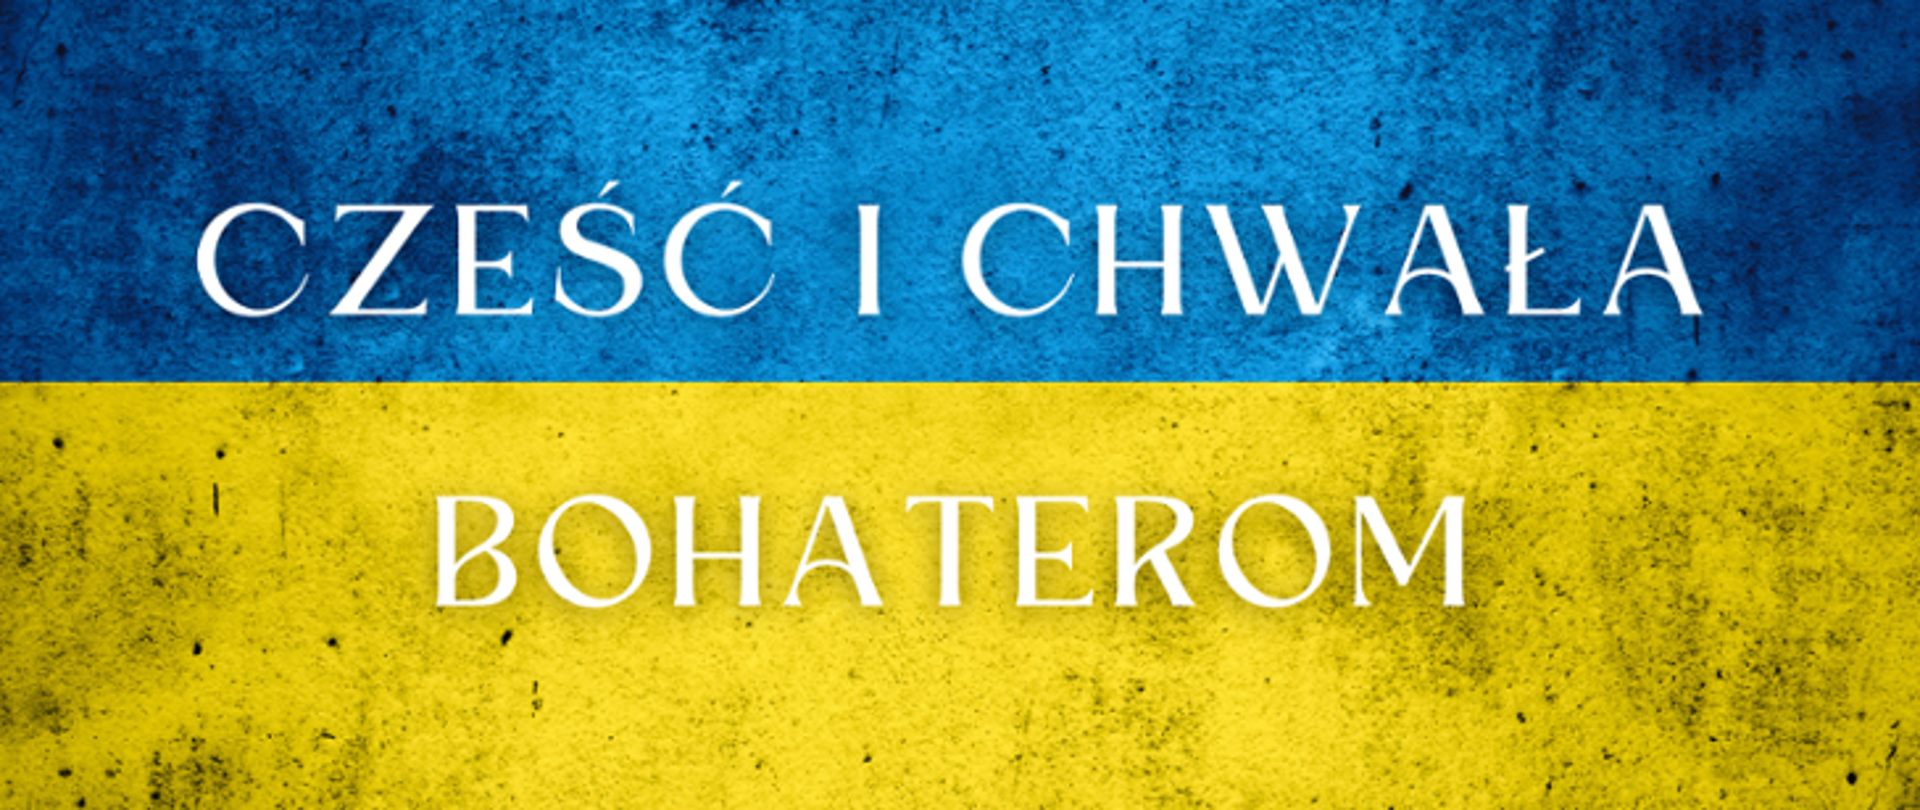 Zdjęcie przedstawia flagę Ukrainy na której widnieje napis Cześć i Chwała Bohaterom